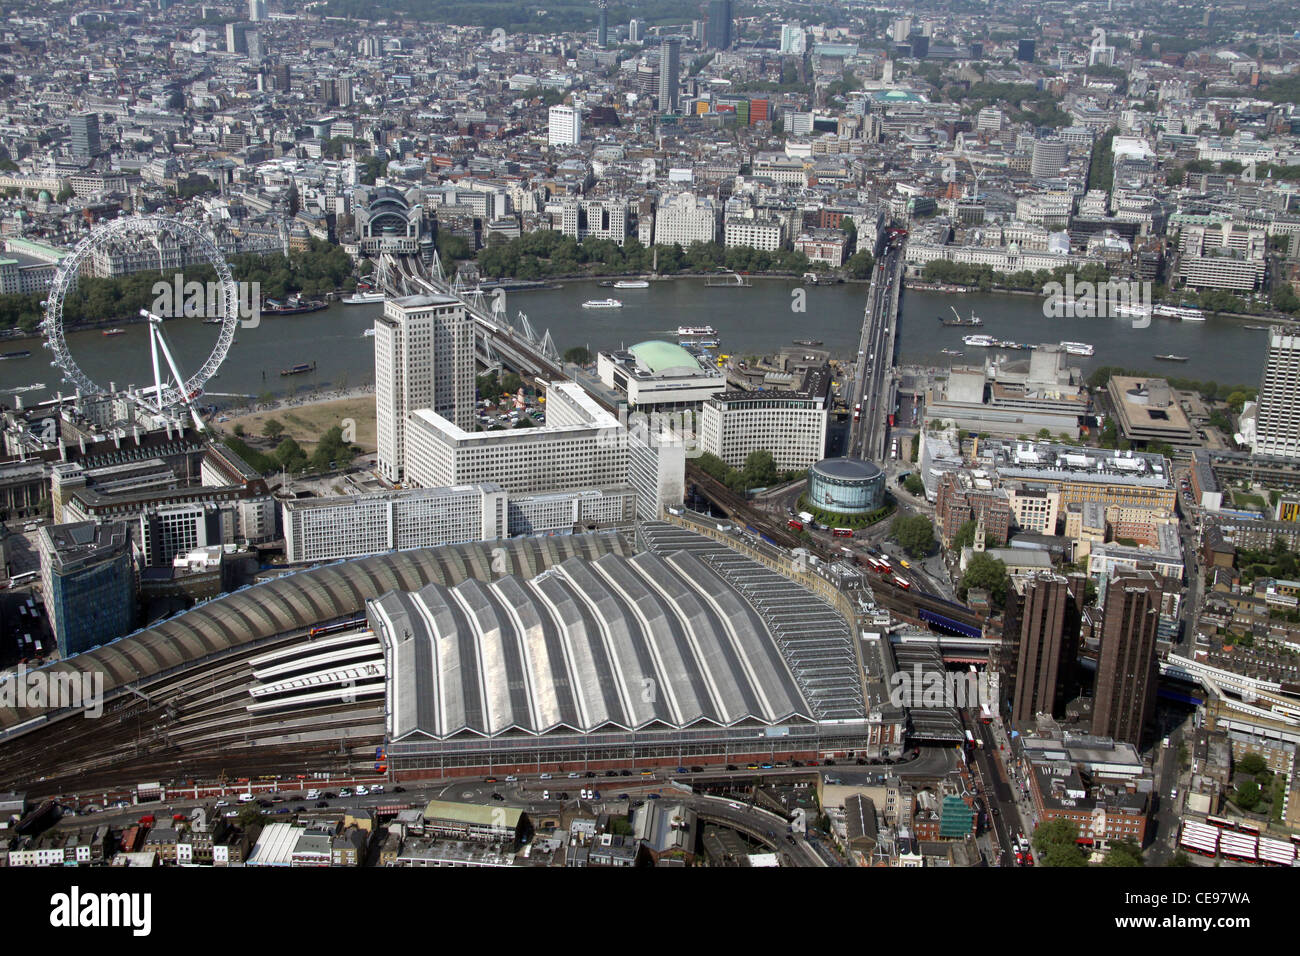 Luftbild der Waterloo Station mit dem Shell Centre, London Eye & River Thames im Hintergrund, London SE1 Stockfoto